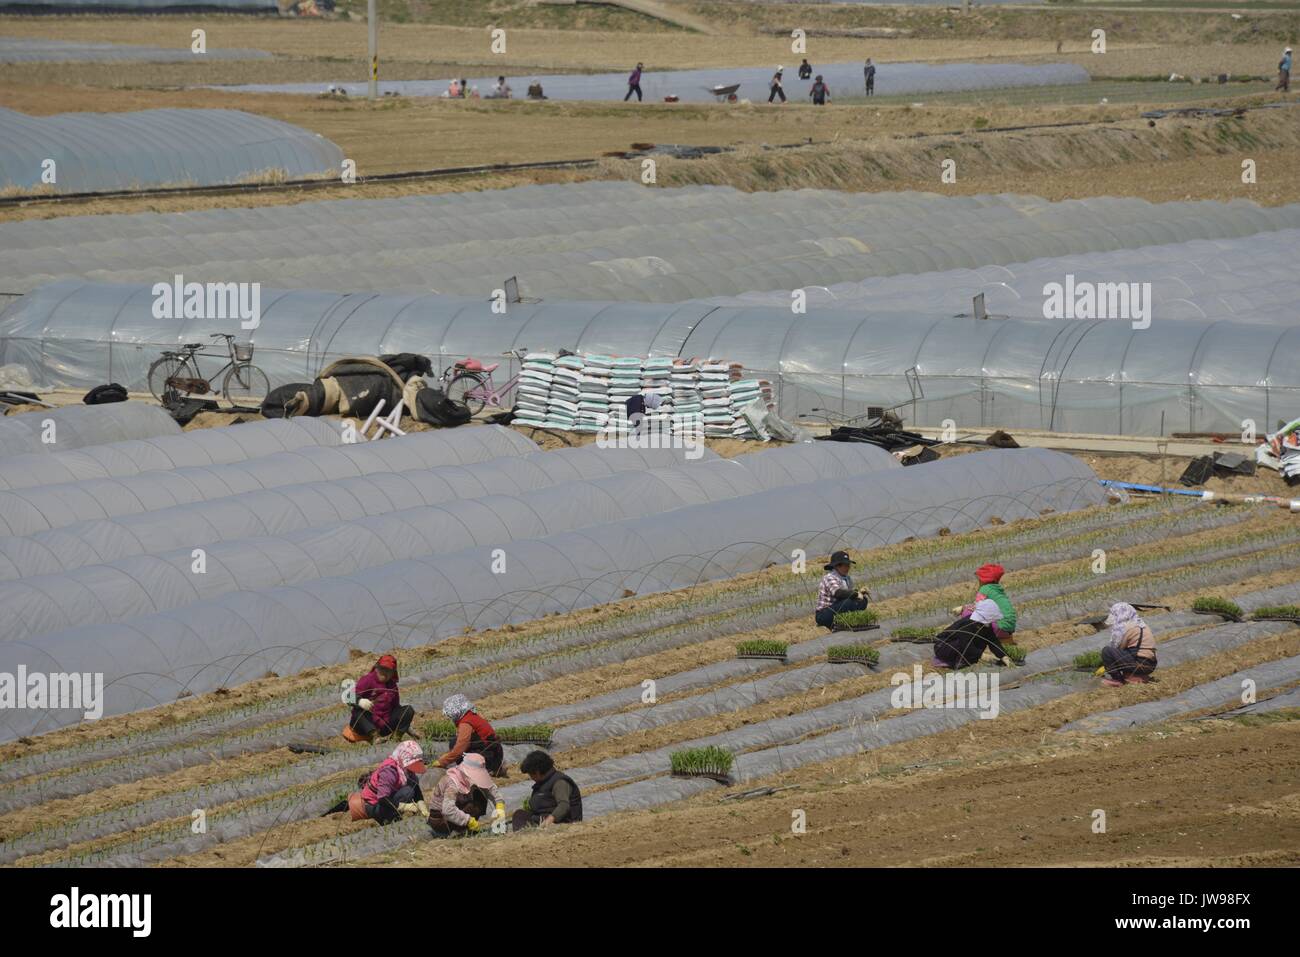 Le donne lavorano su campi nei pressi di serre di plastica per le coltivazioni vicino Namji, nel sud della Corea del Sud, 26 marzo 2013. La Corea del Sud ha una altamente sviluppato agricoltura industria. | Utilizzo di tutto il mondo Foto Stock